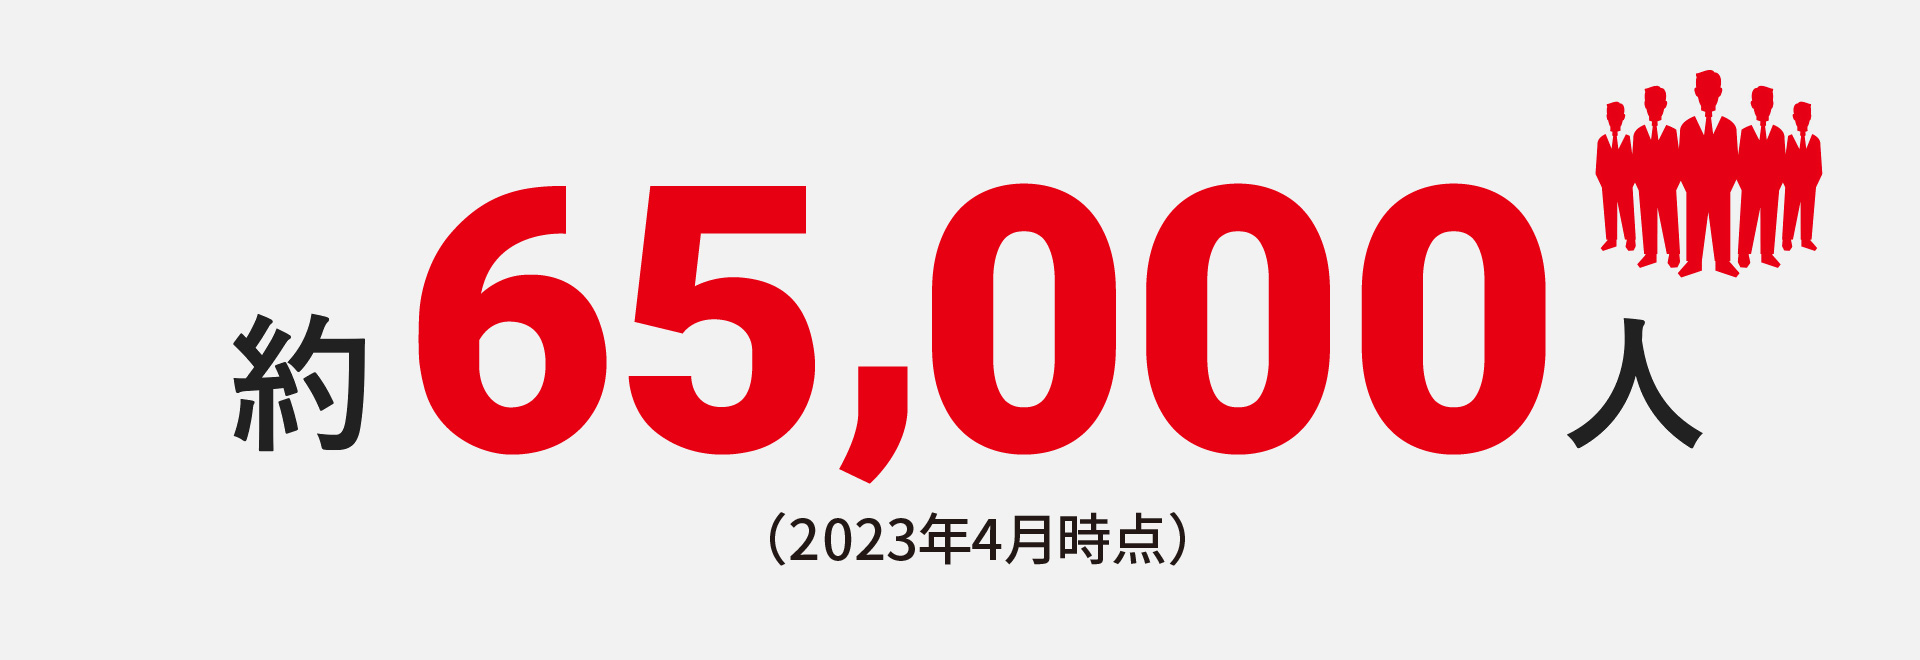 約65,000人（2023年4月時点）